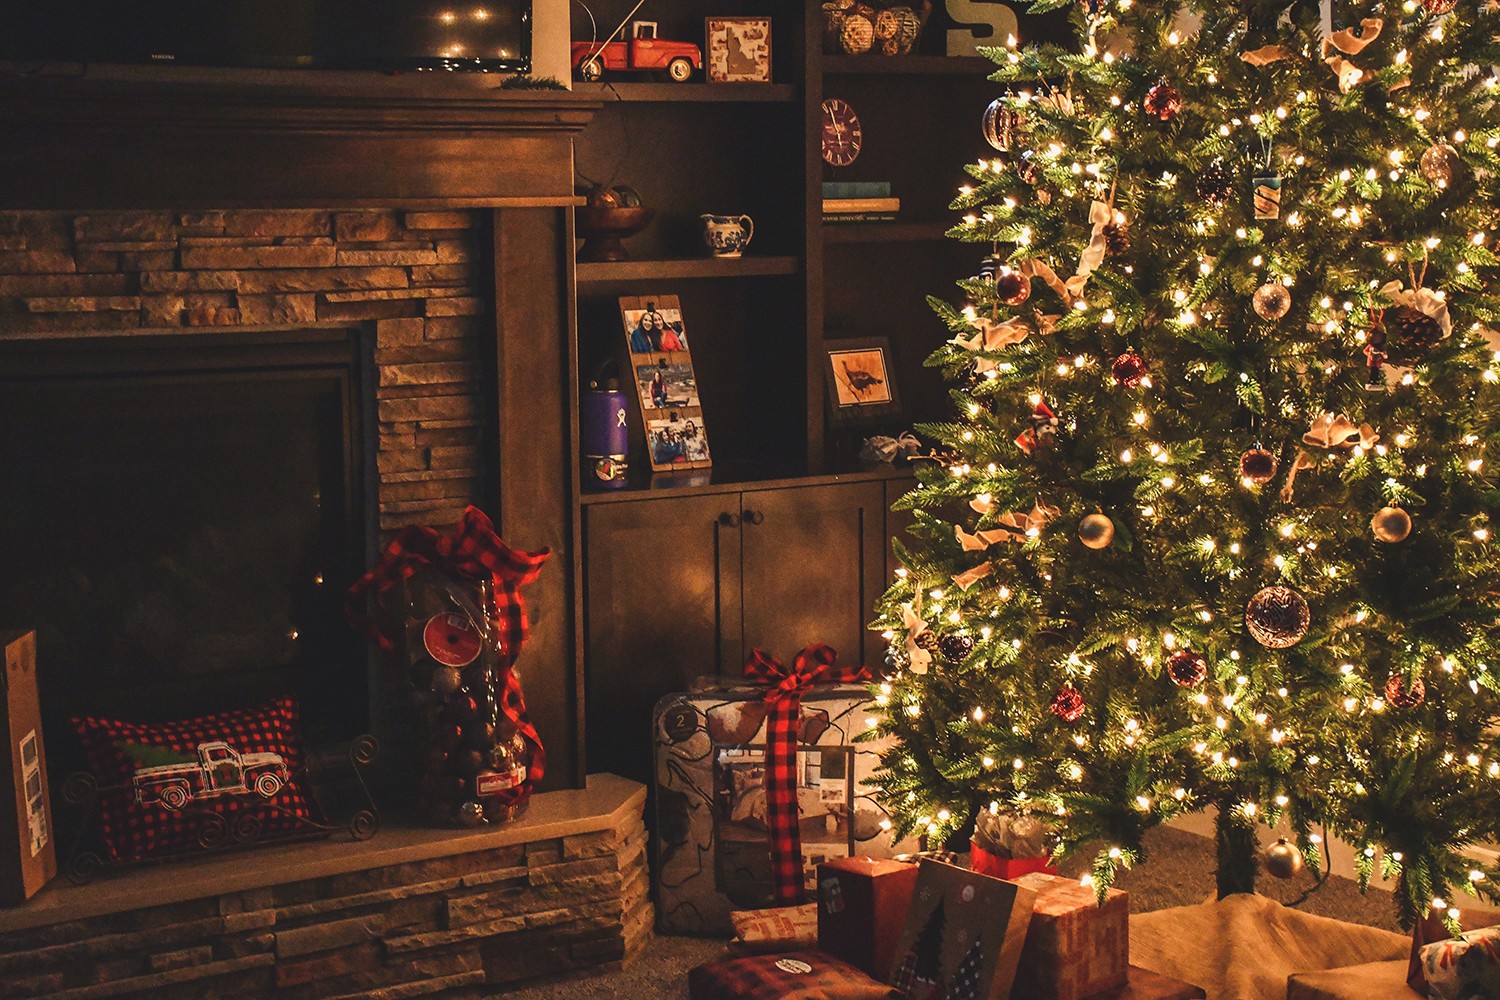 Para fugir do óbvio no Natal, uma ideia é utilizar outras cores no décor que sejam não o vermelho, verde e dourado tradicionais (Foto: Pexels / Brett Sayles / CreativeCommons)